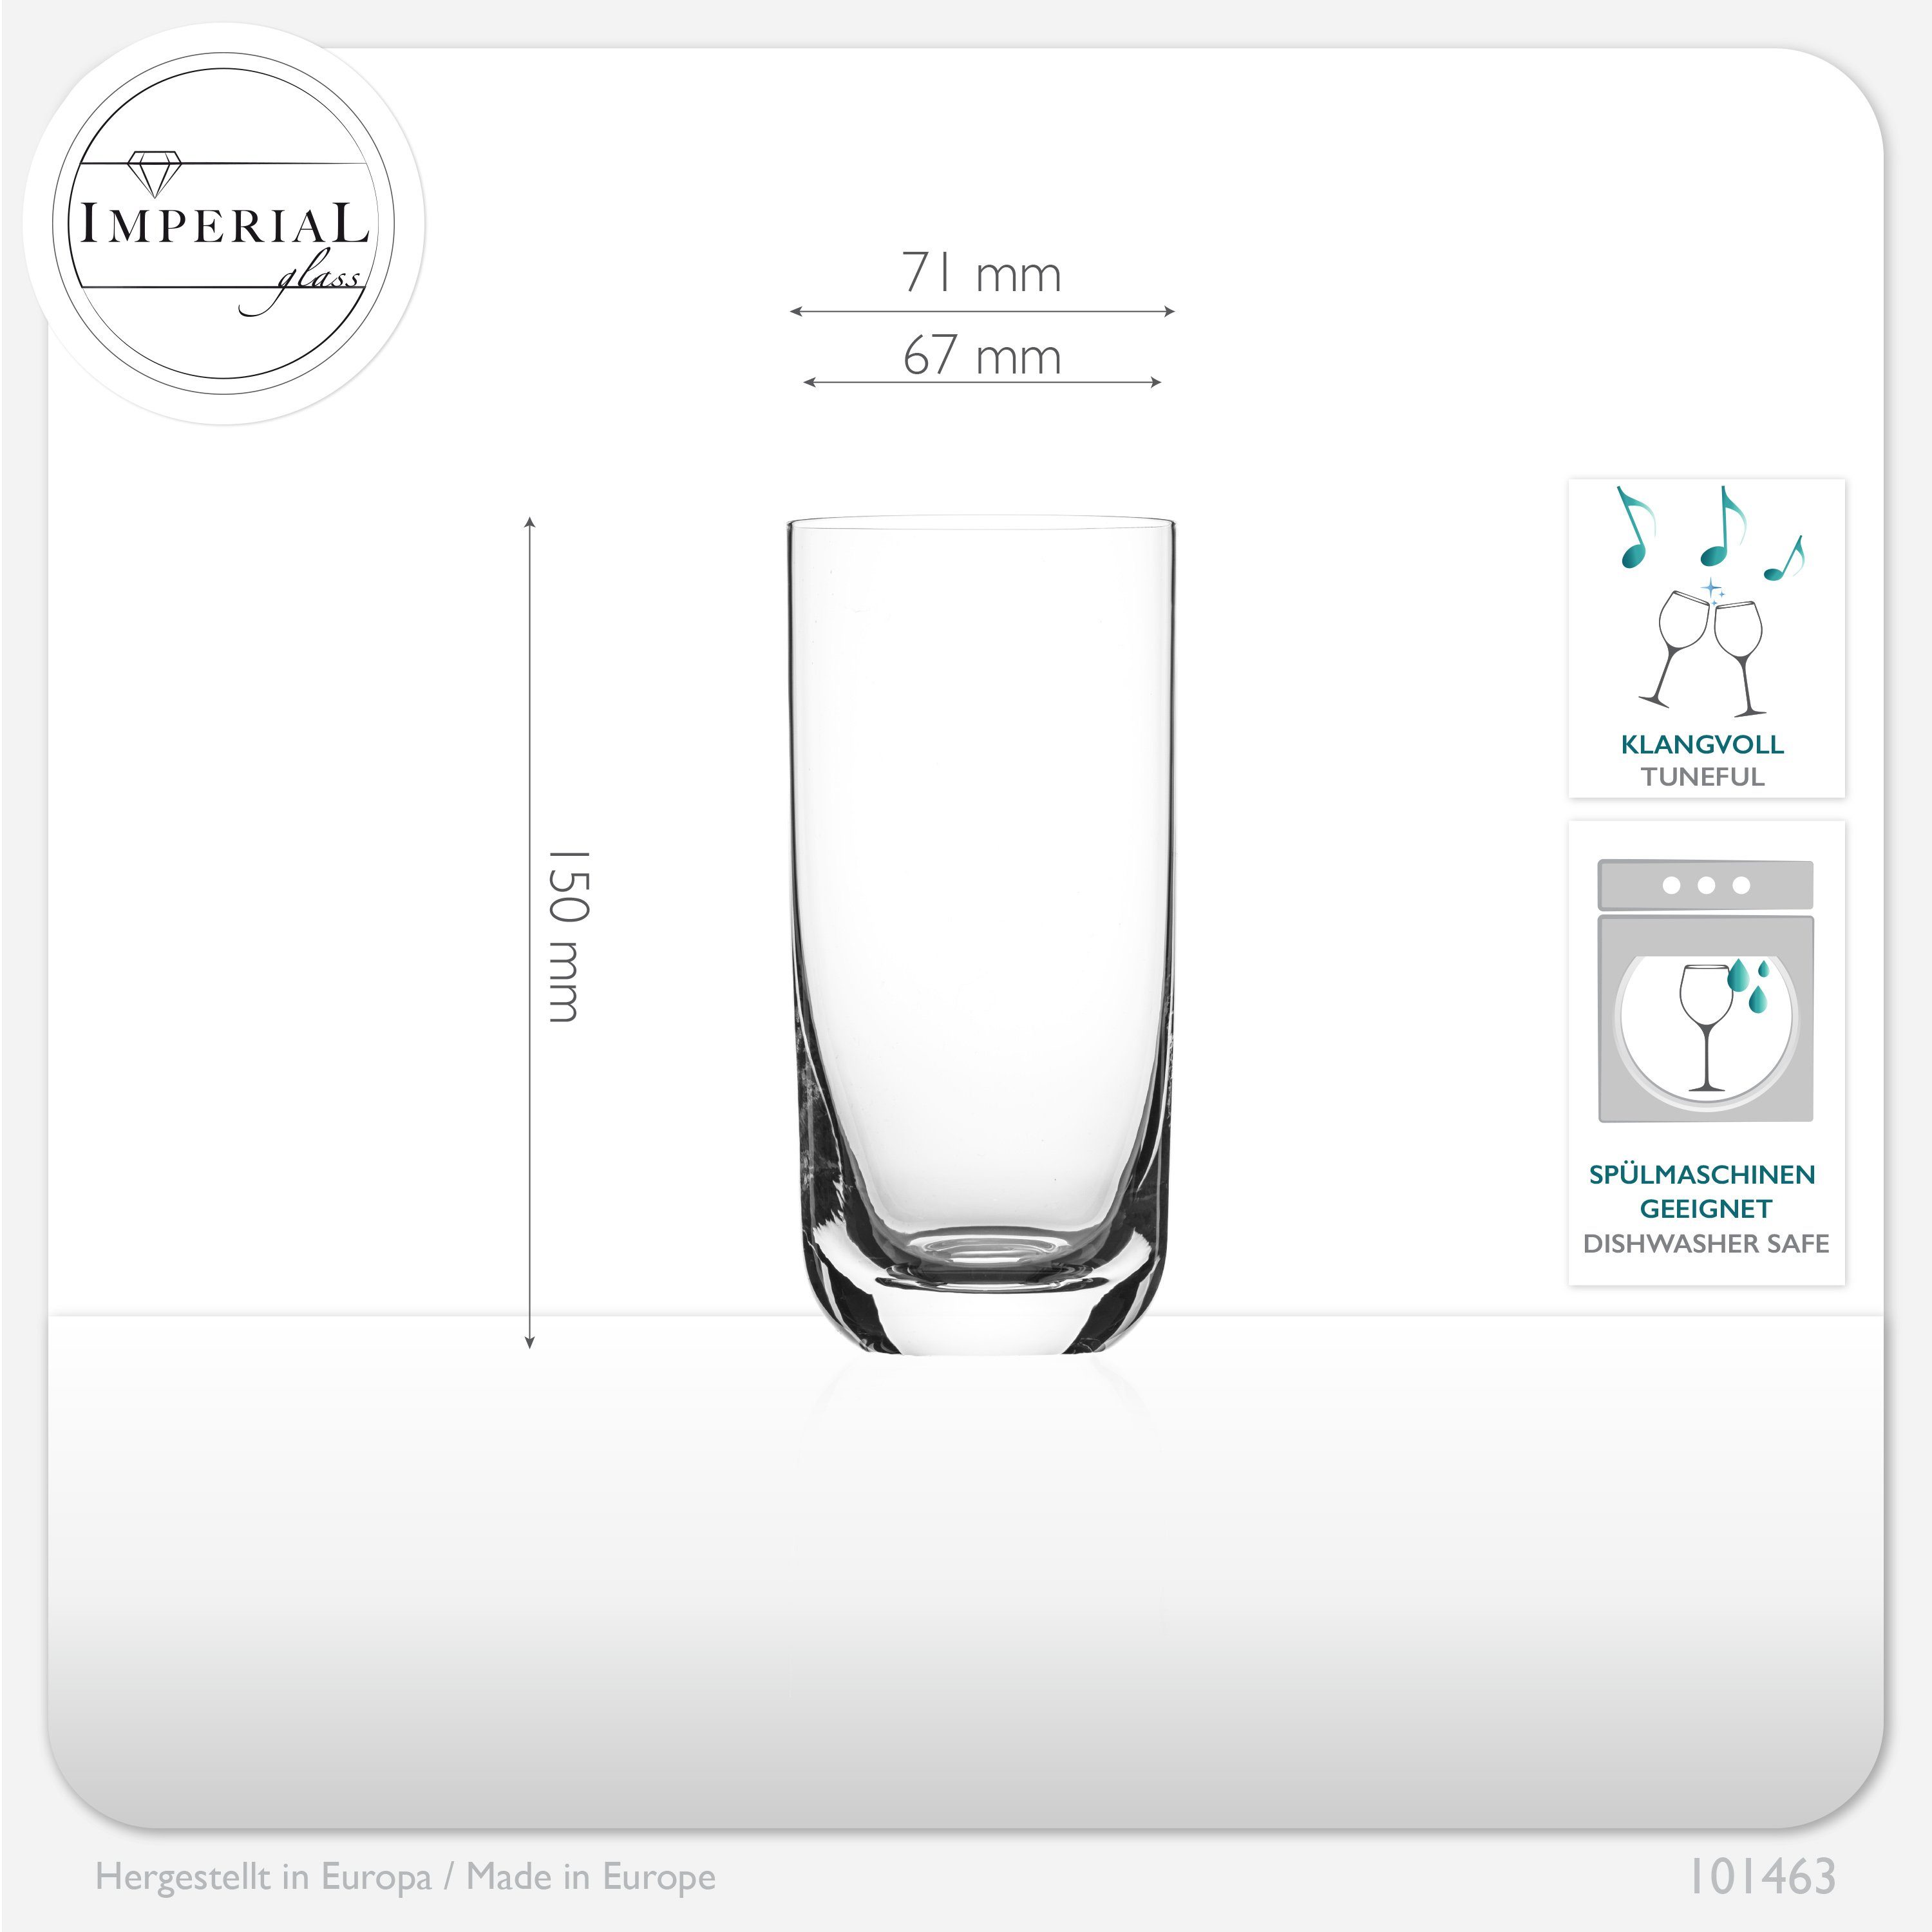 Trinkgläser, IMPERIAL Glas Longdrinkgläser 420ml) Saftgläser Wassergläser glass Glas, (max. Cocktailglas